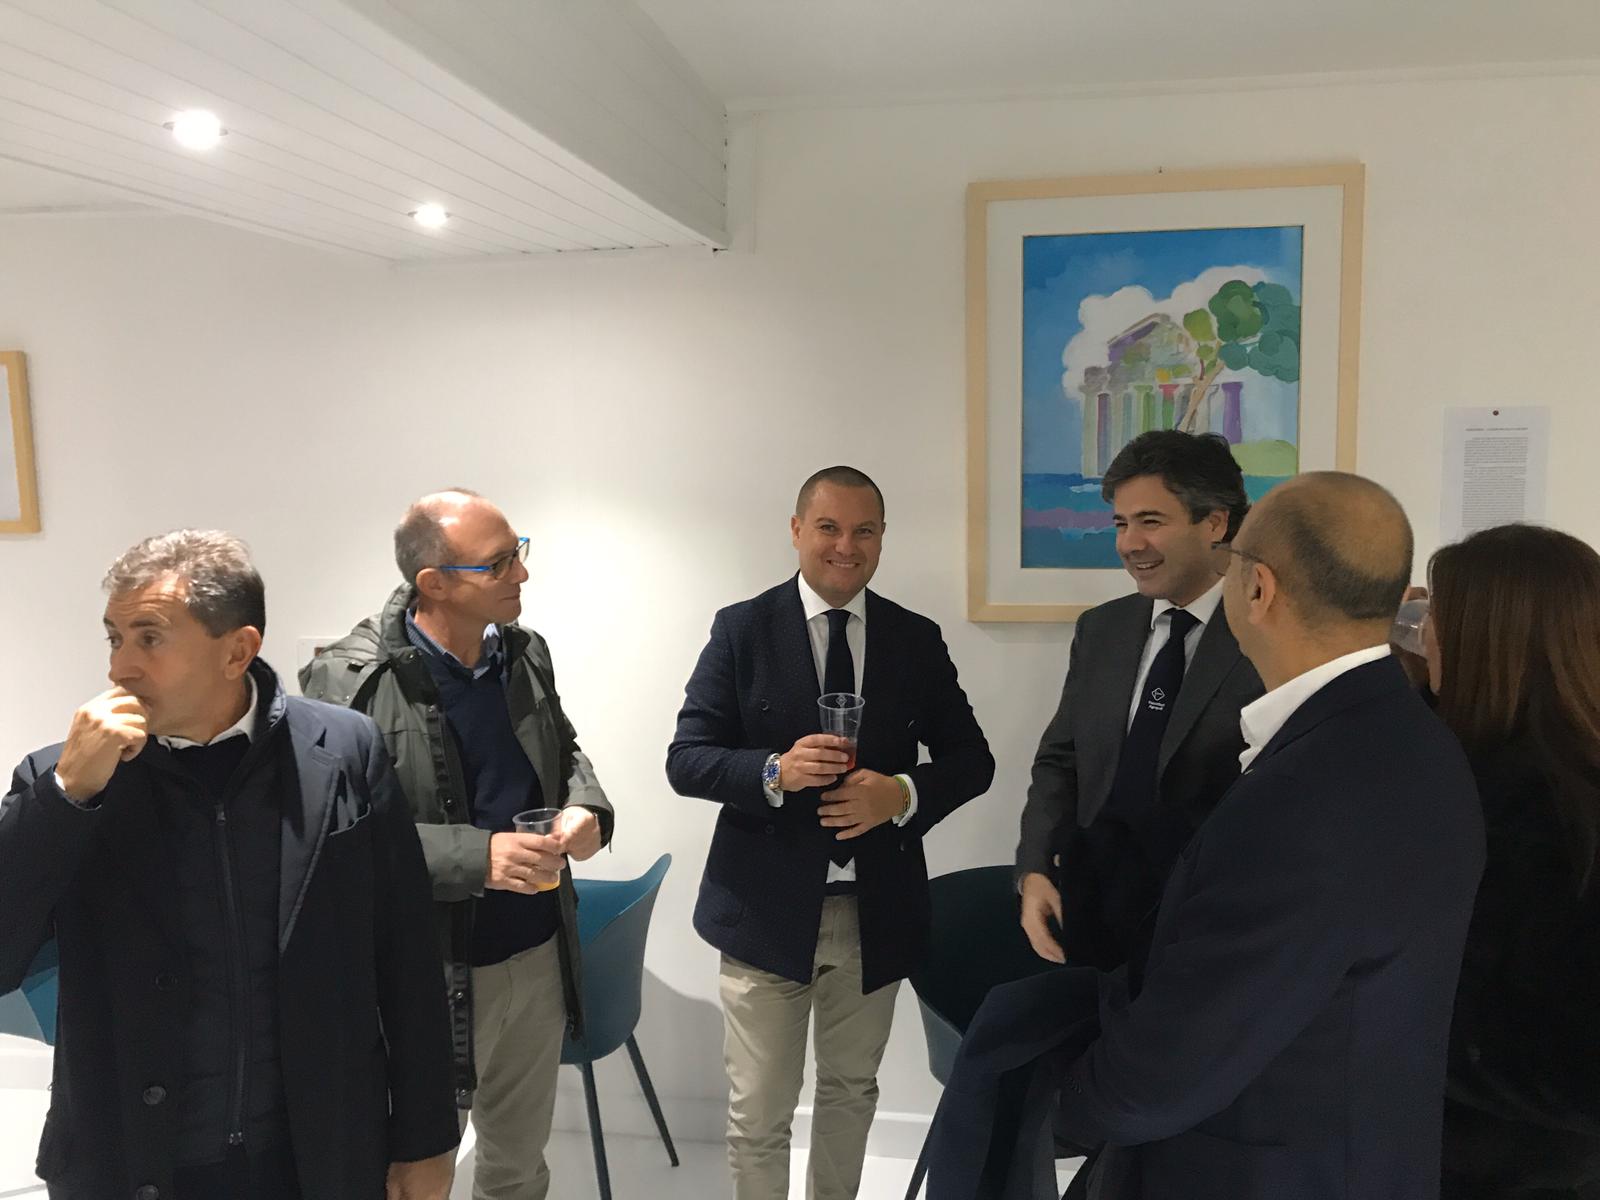 Circolo Canottieri apre la nuova sede ad Agropoli